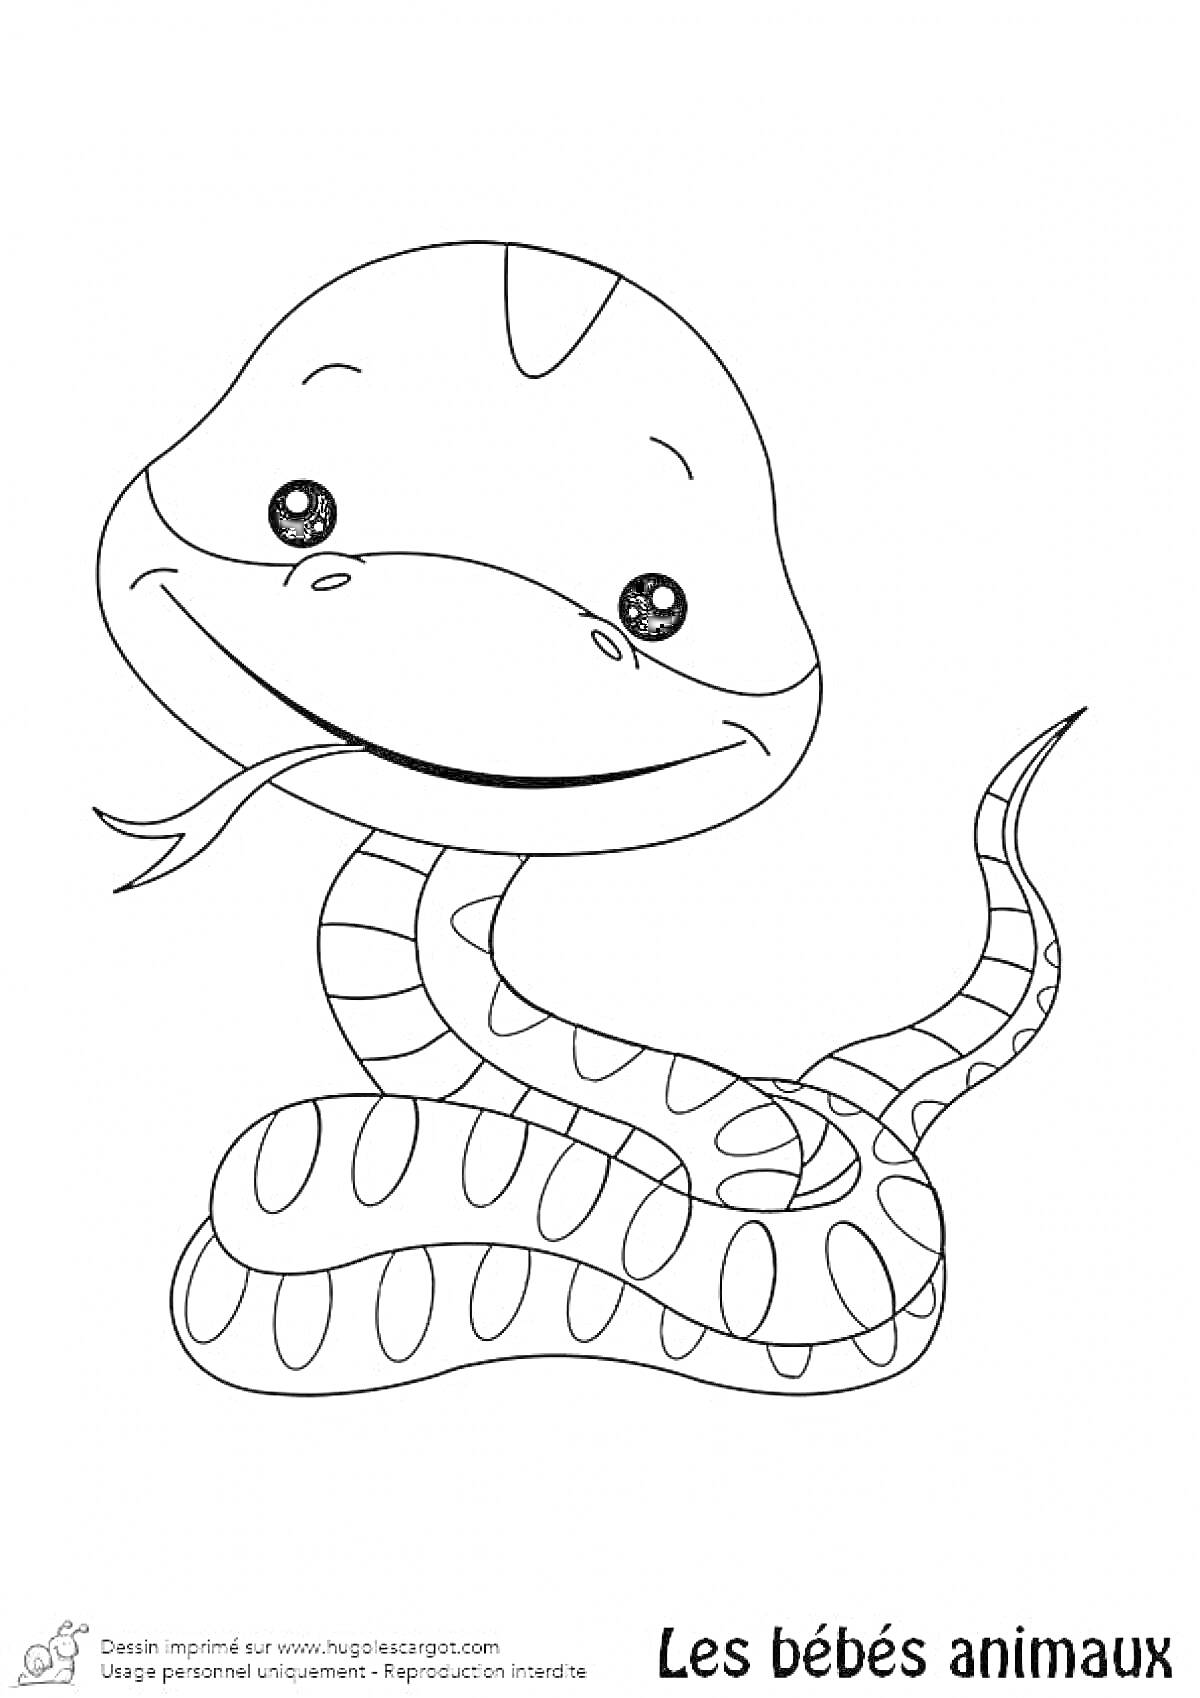 Раскраска Змея, улыбающаяся с высунутым языком, с узором на теле